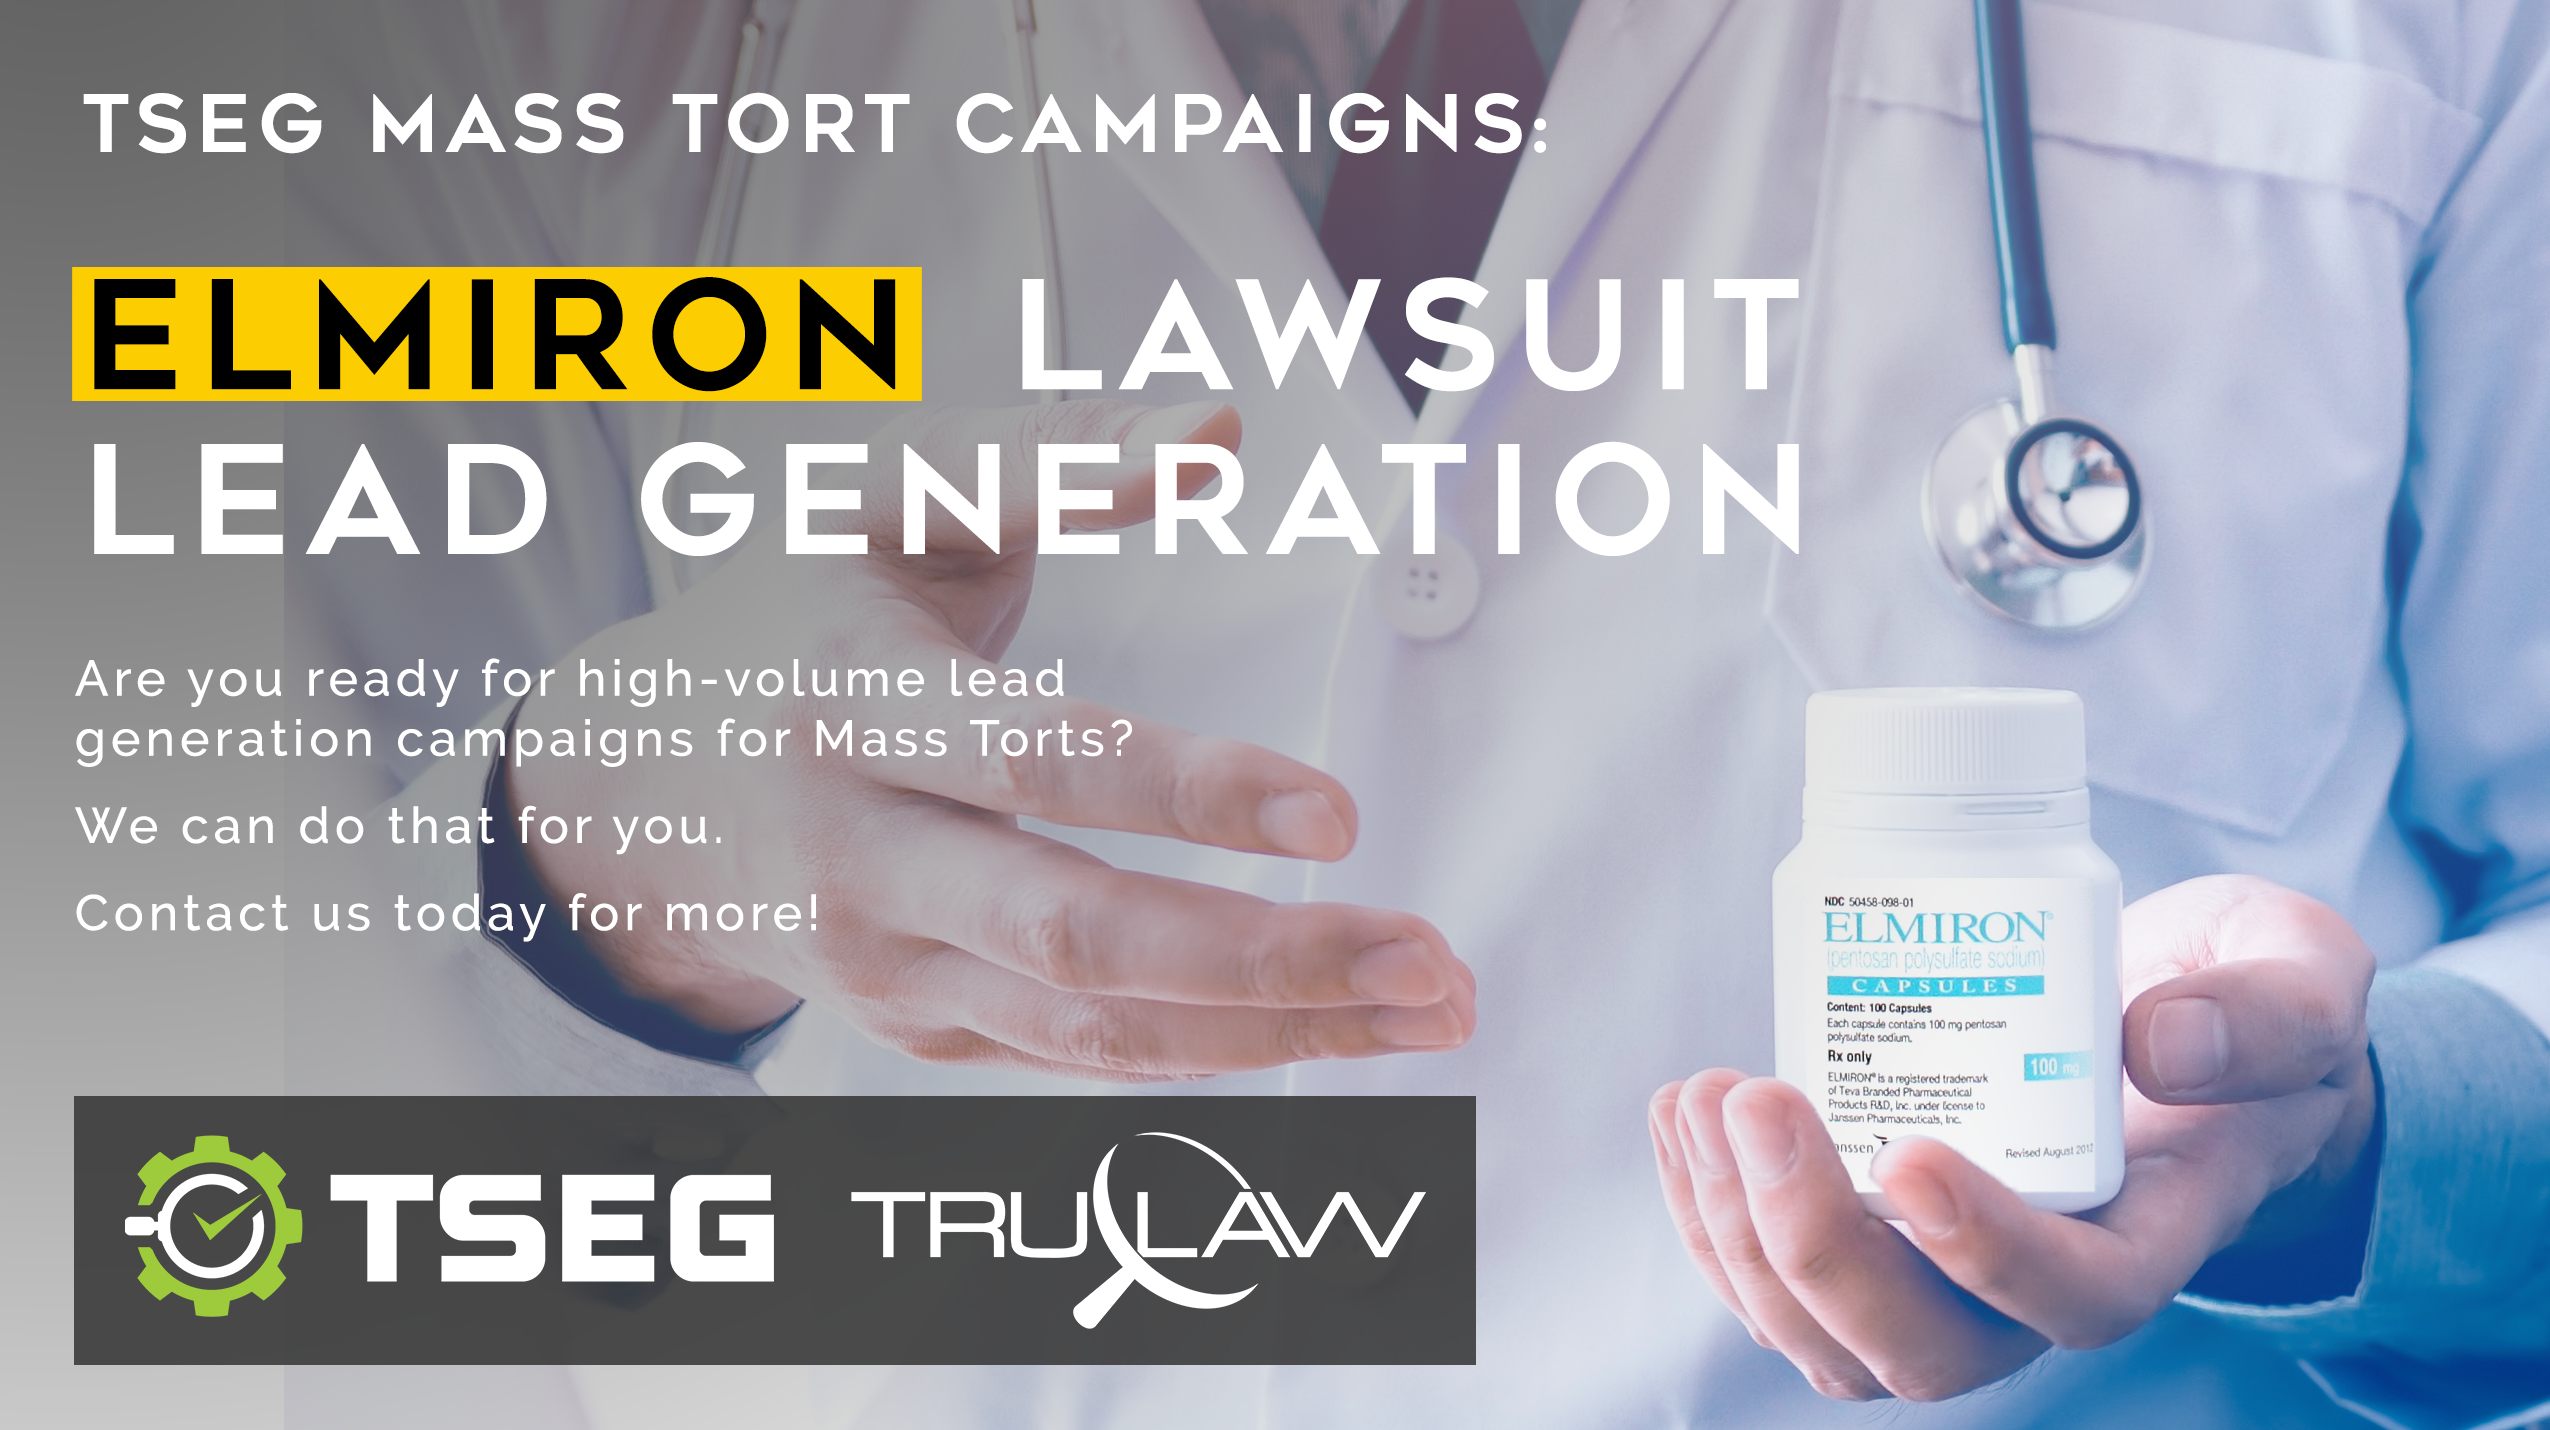 elmiron lawsuit campaign